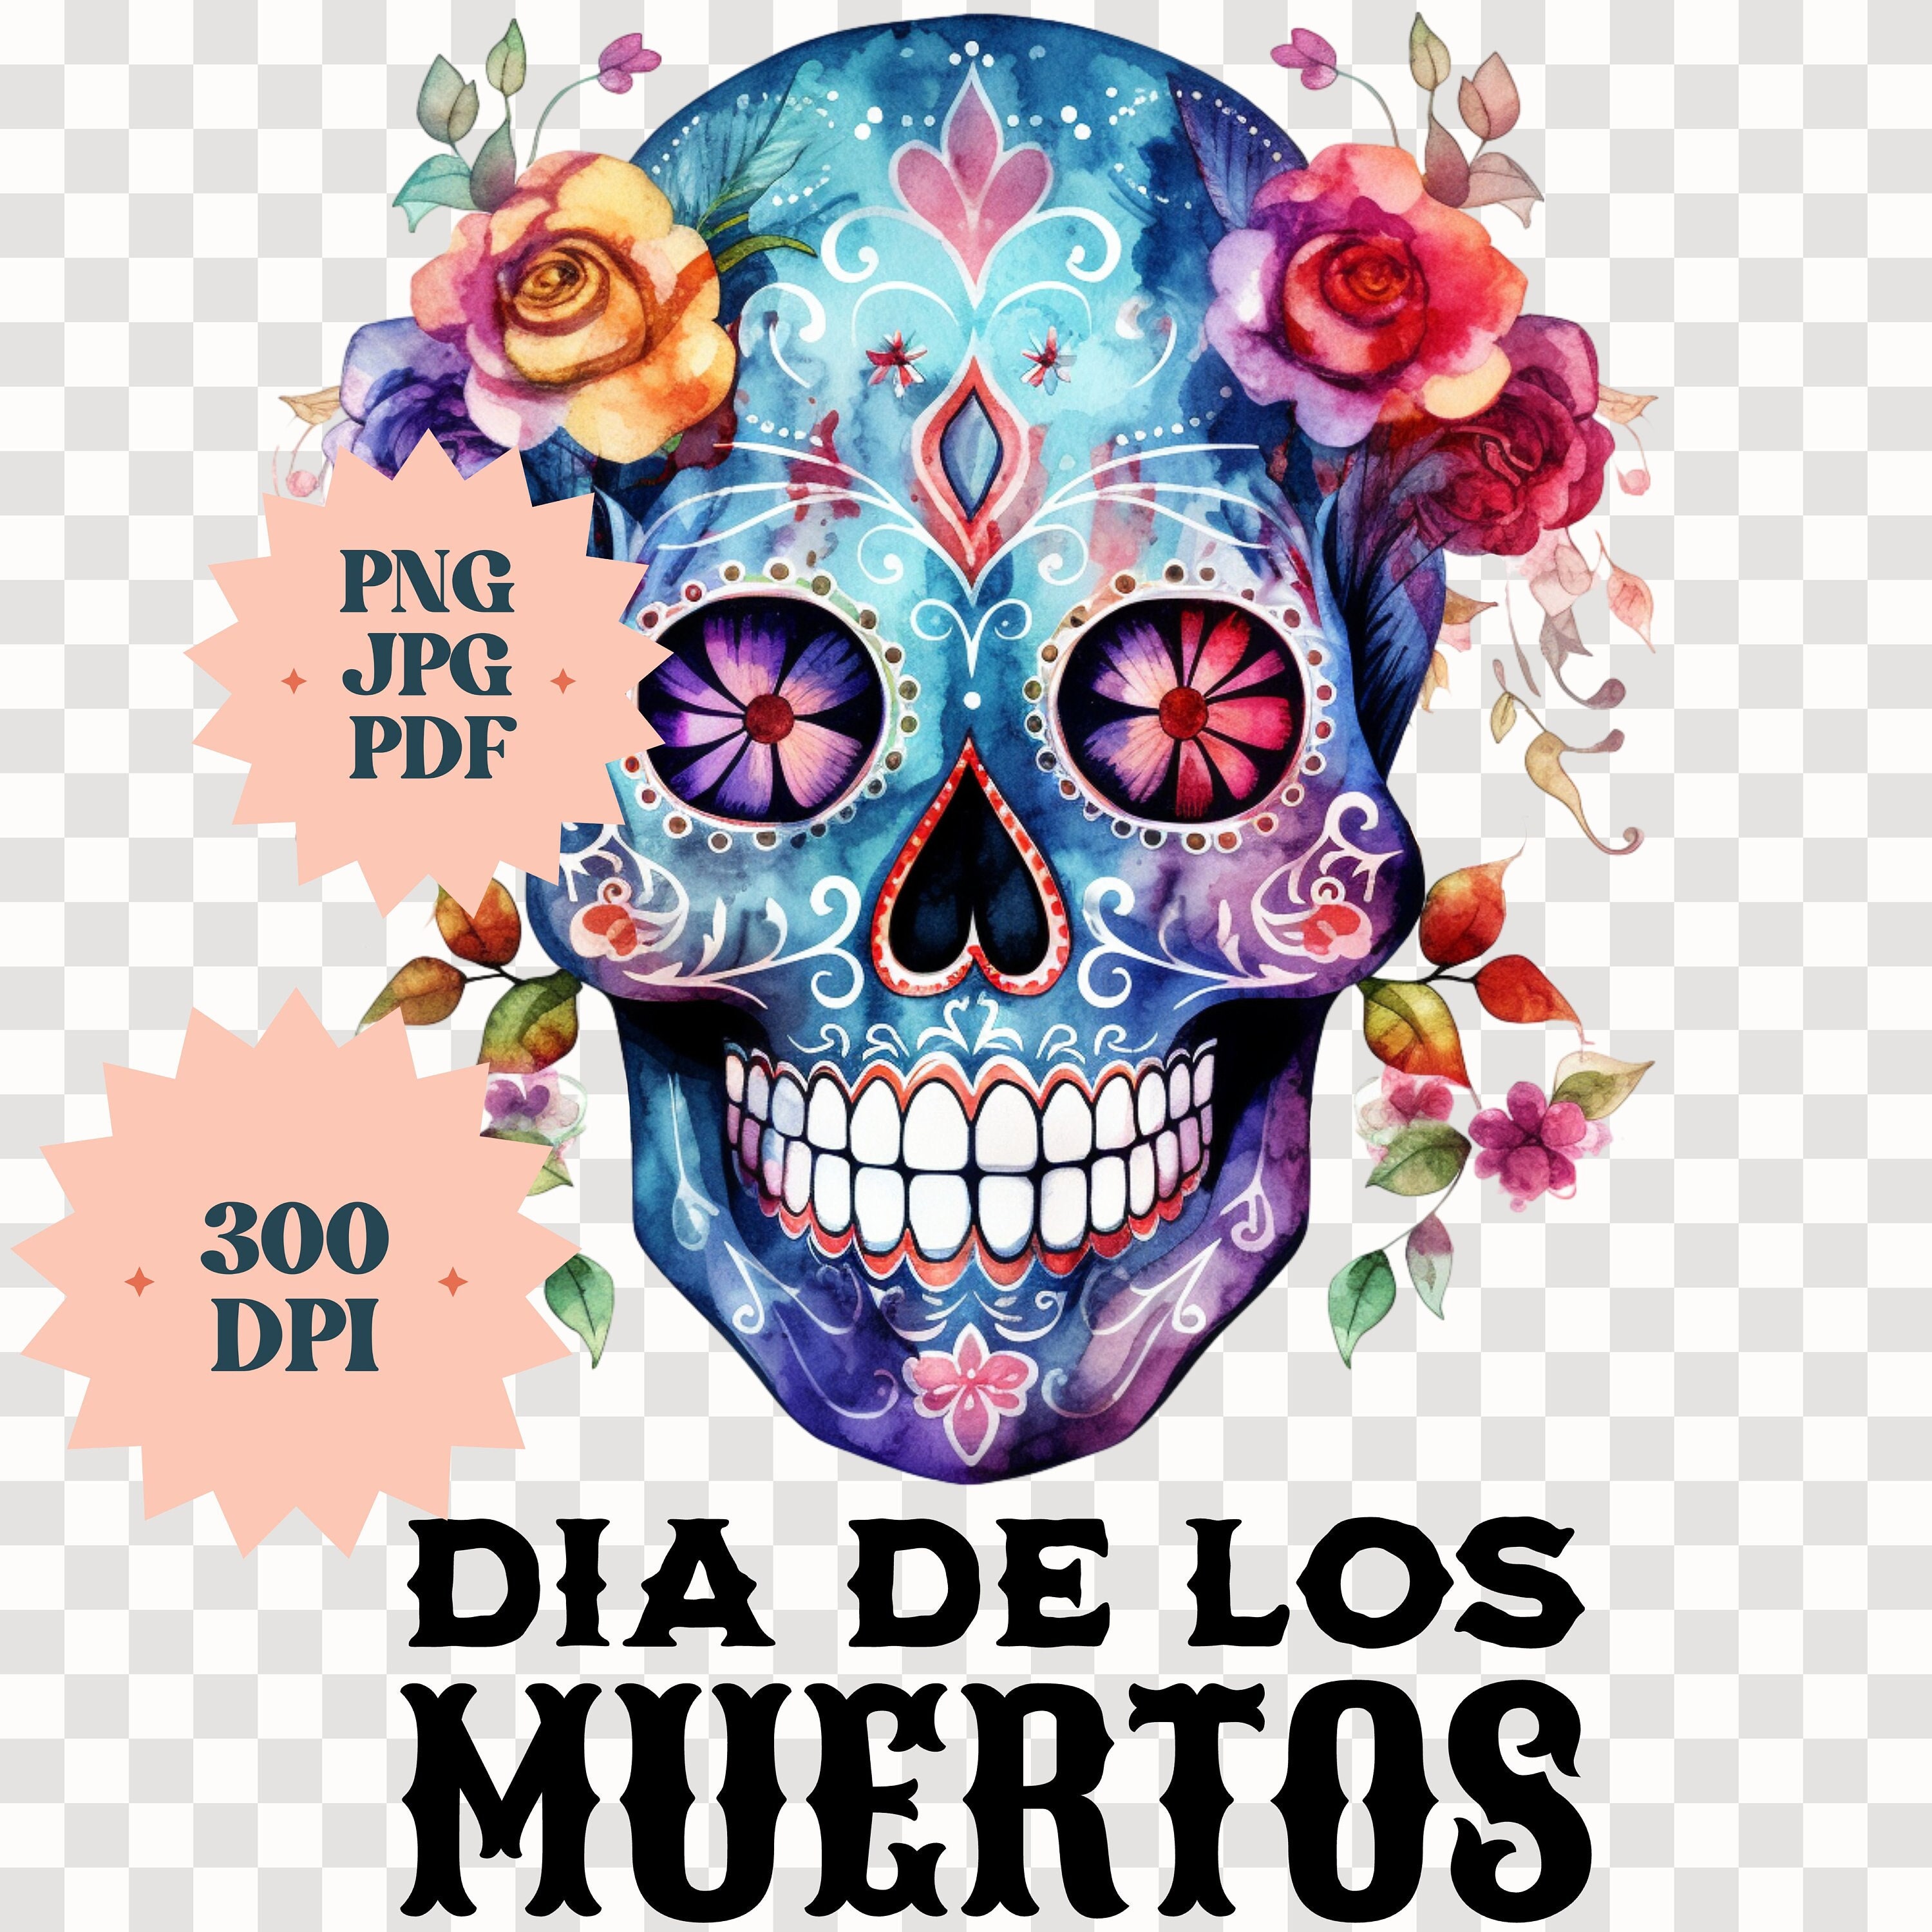 PILLOWS - SUGAR SKULL #23 Dia de los Muertos Day of the Dead